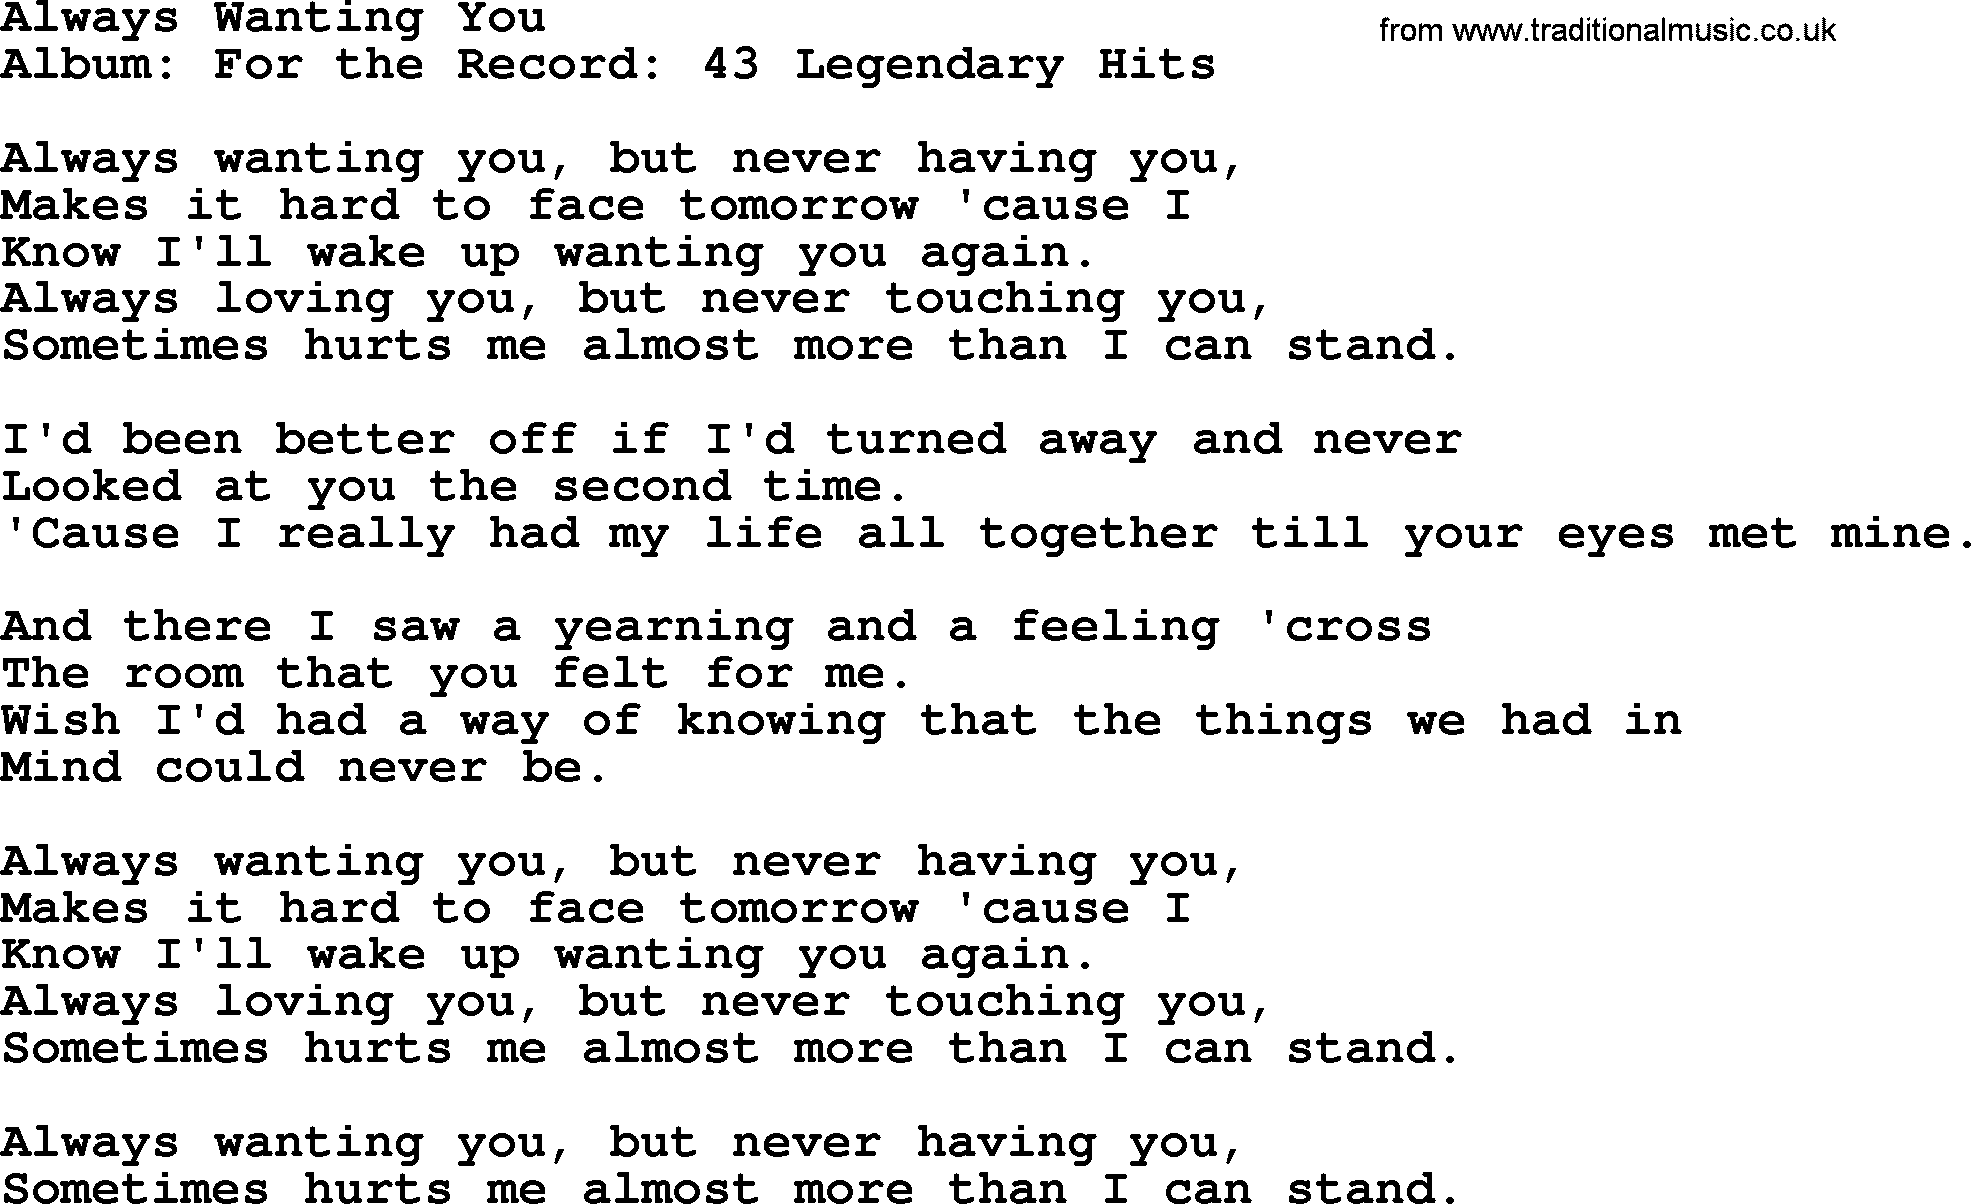 Merle Haggard song: Always Wanting You, lyrics.